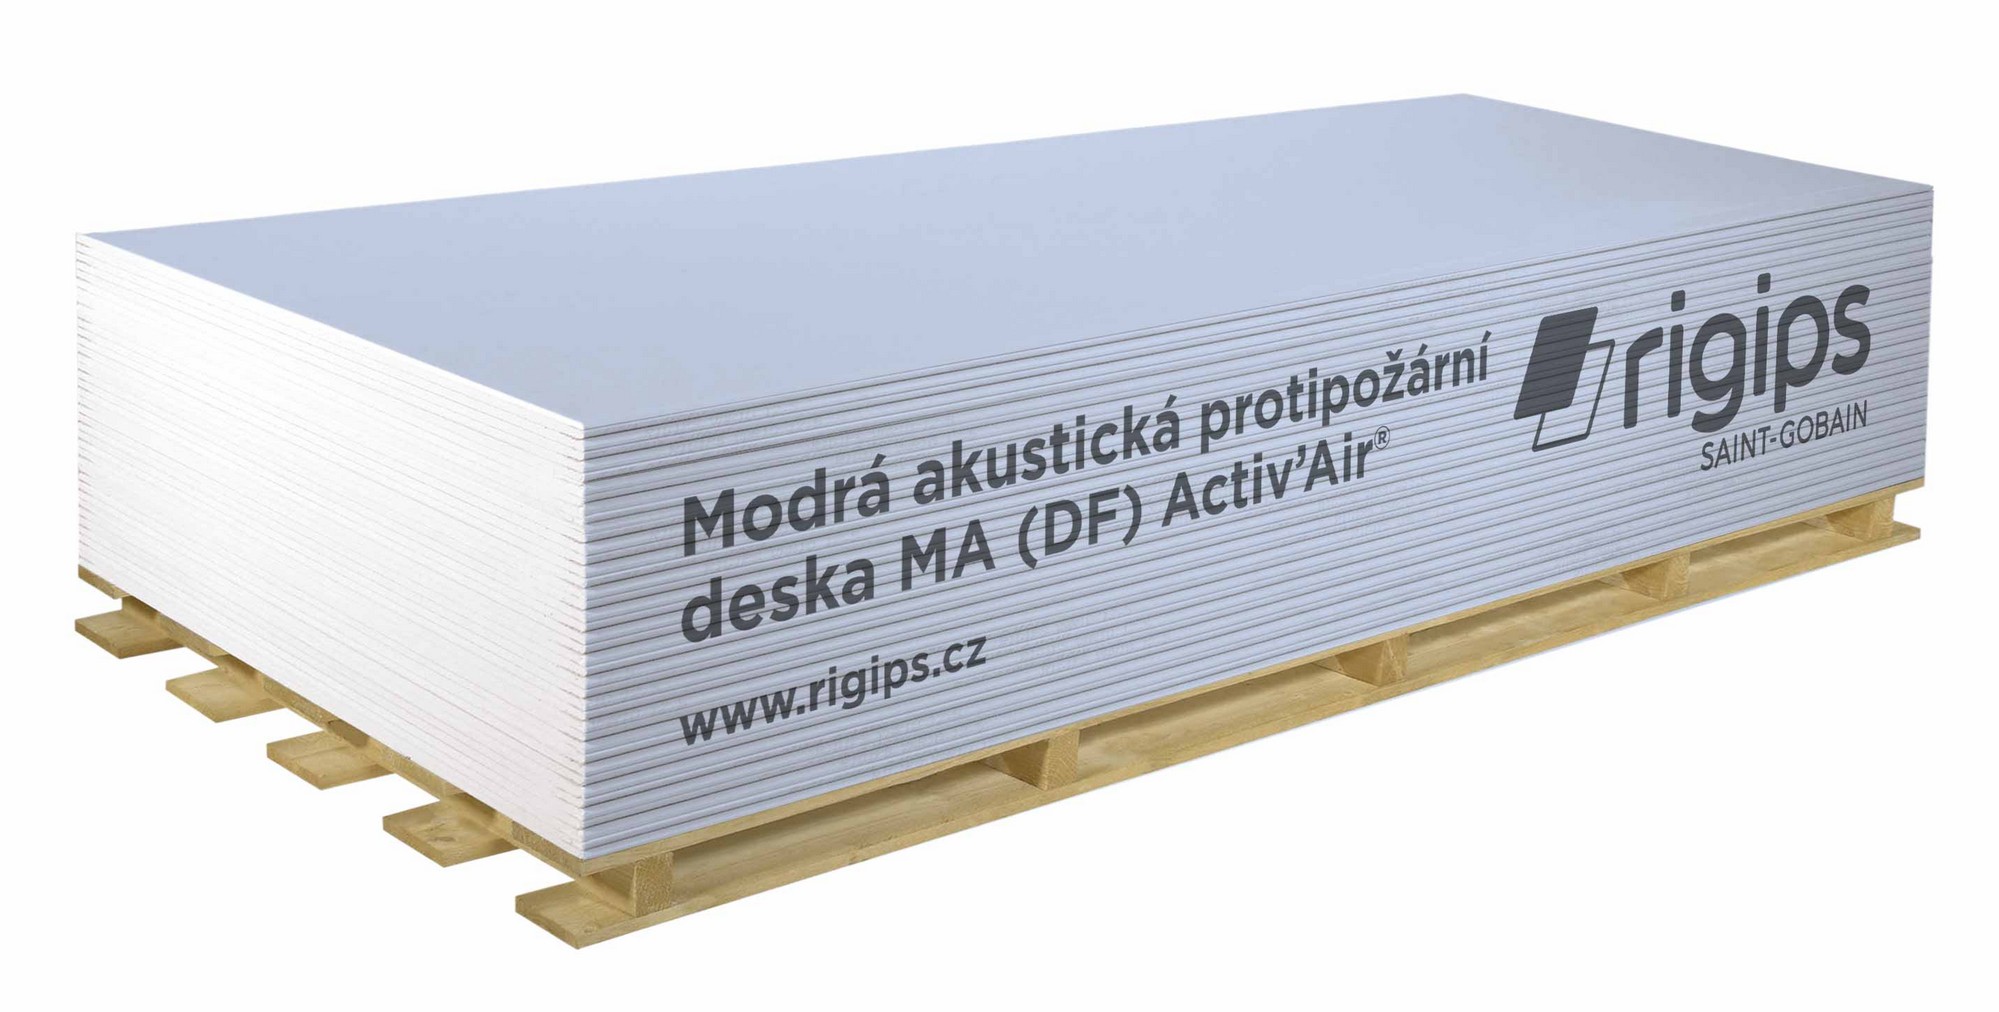 Deska sádrokartonová Rigips MA (DF) Activ' Air 12,5×1250×2000 mm